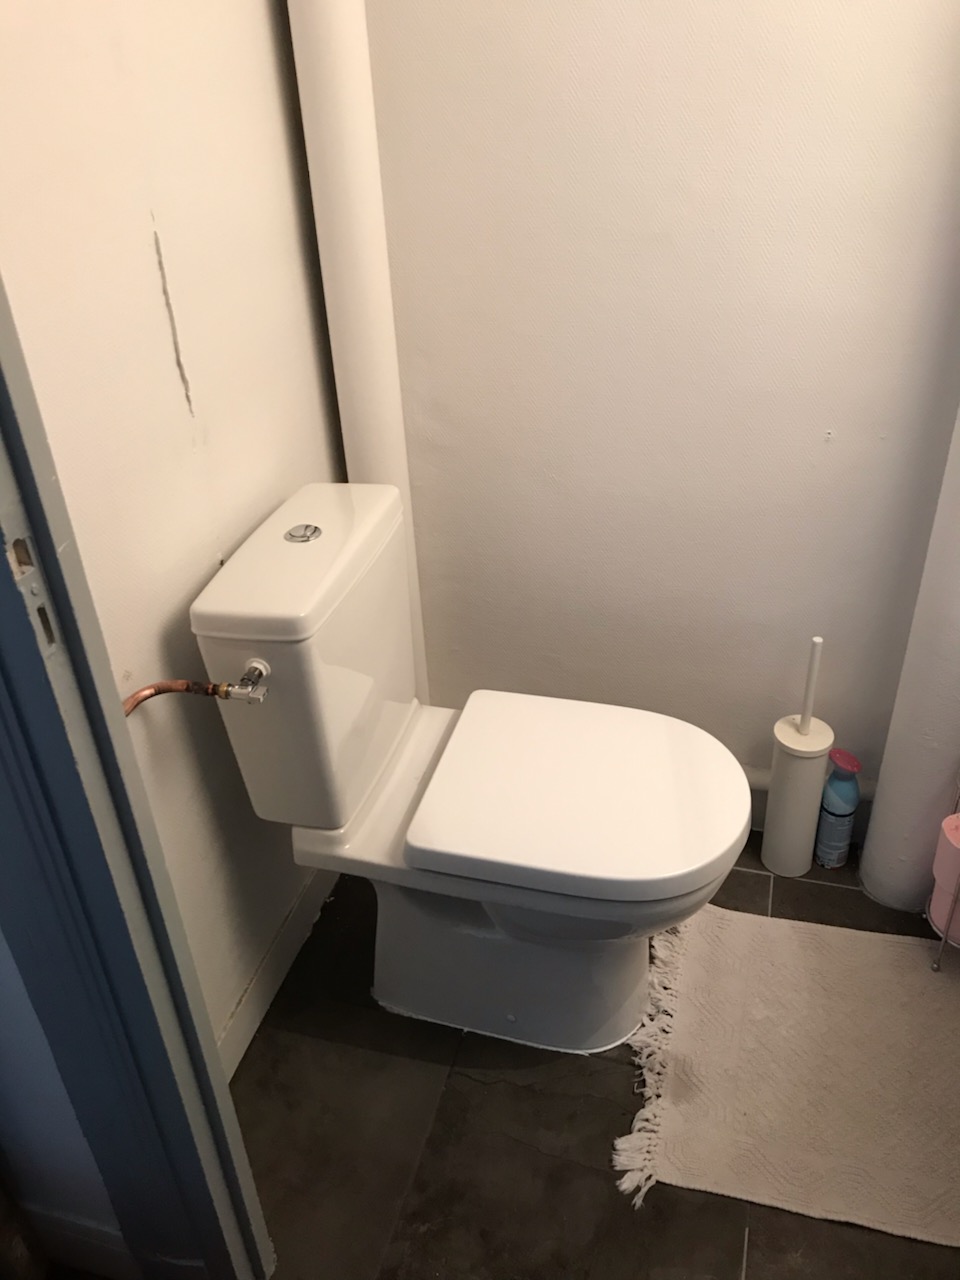 Toilette réparée